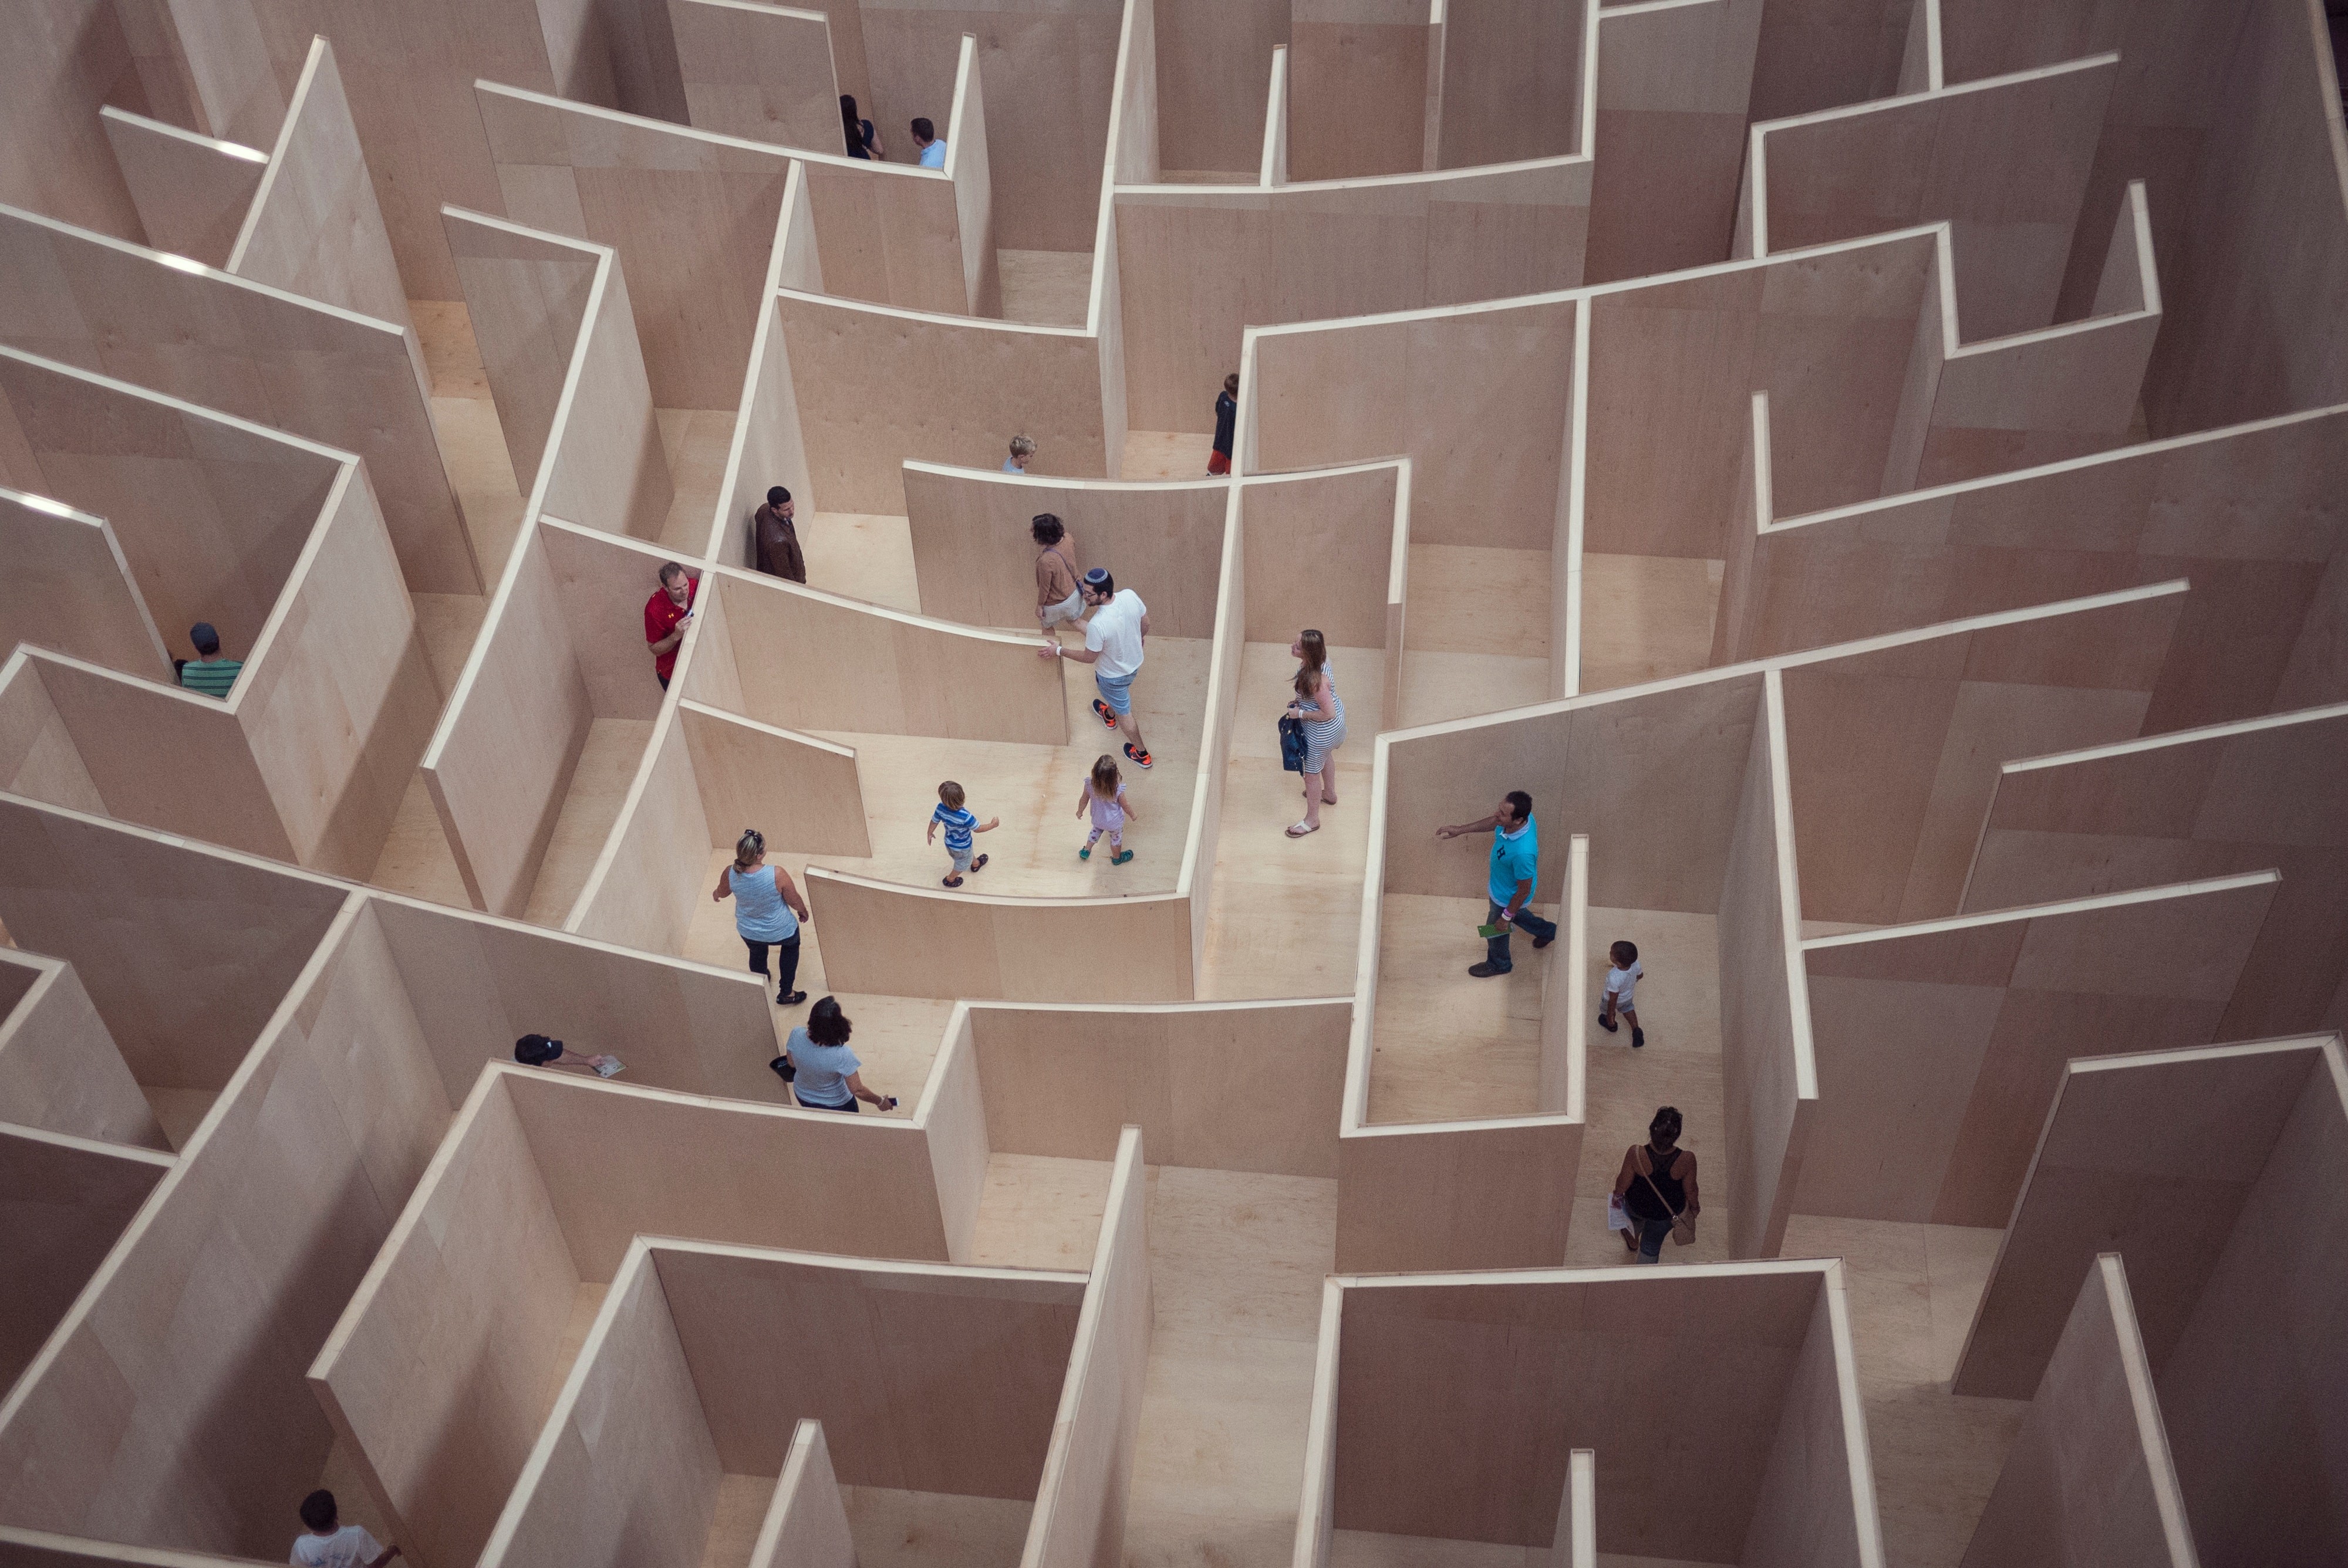 Auf dem Bild sind mehrere Menschen zu sehen, die durch ein Labyrinth gehen. Die Wände des Labyrinths sind dabei unterschiedlich hoch, ein Mann guckt sogar über eine der Wände.